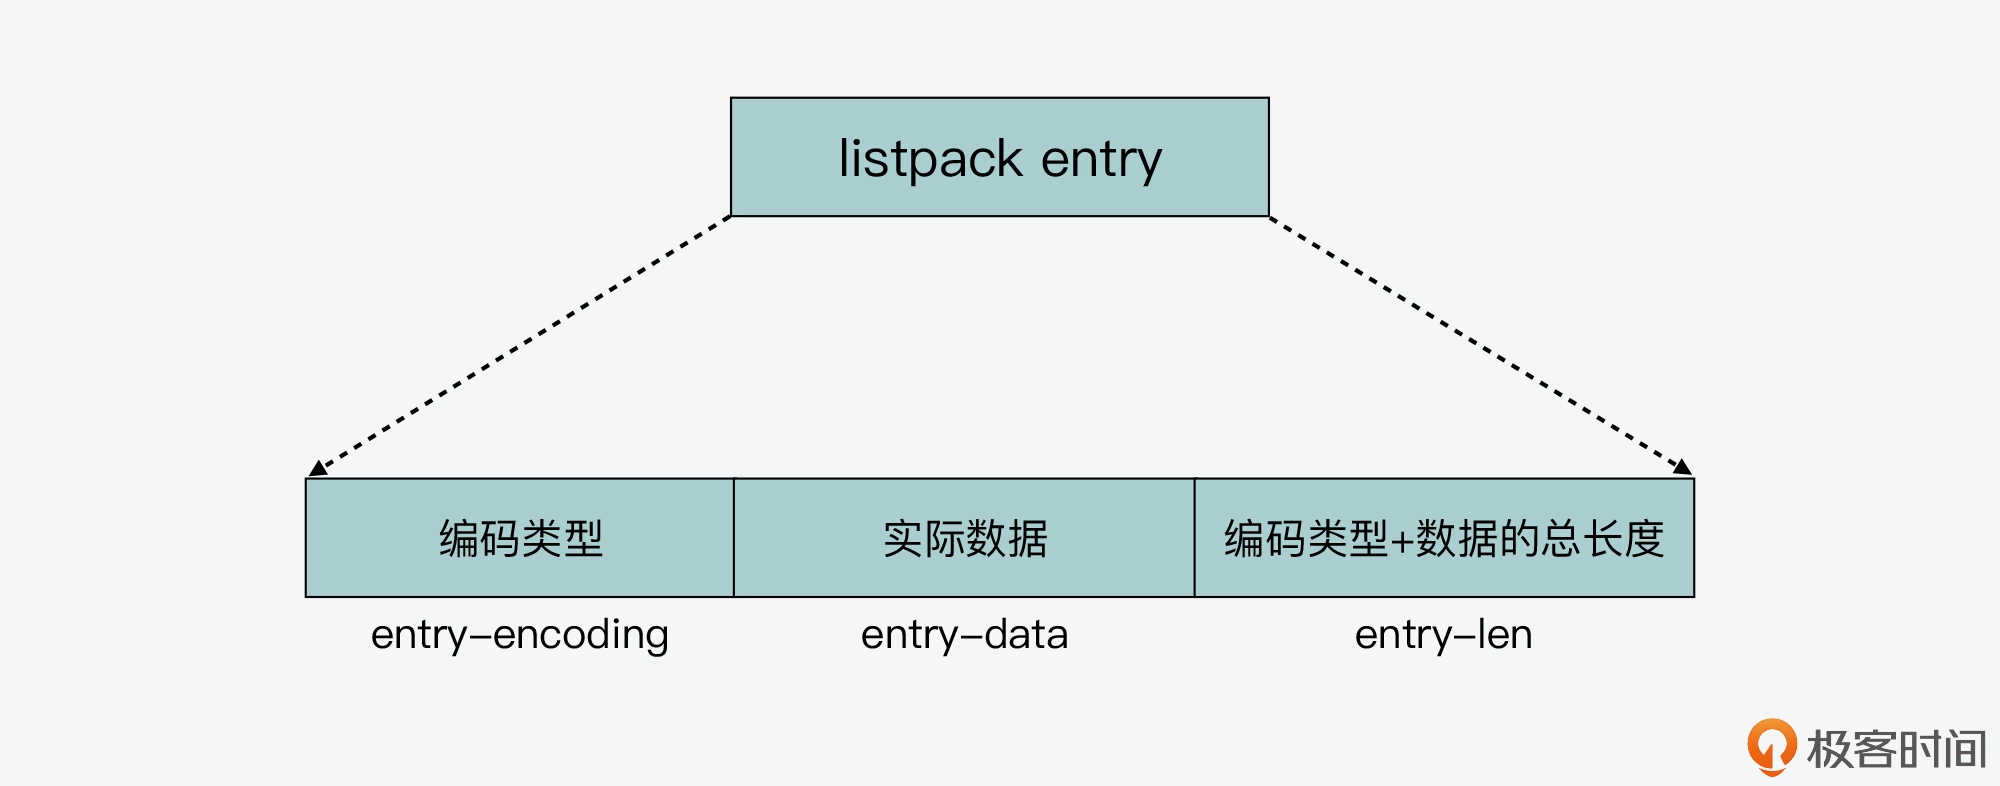 极客时间：listpack 的元素